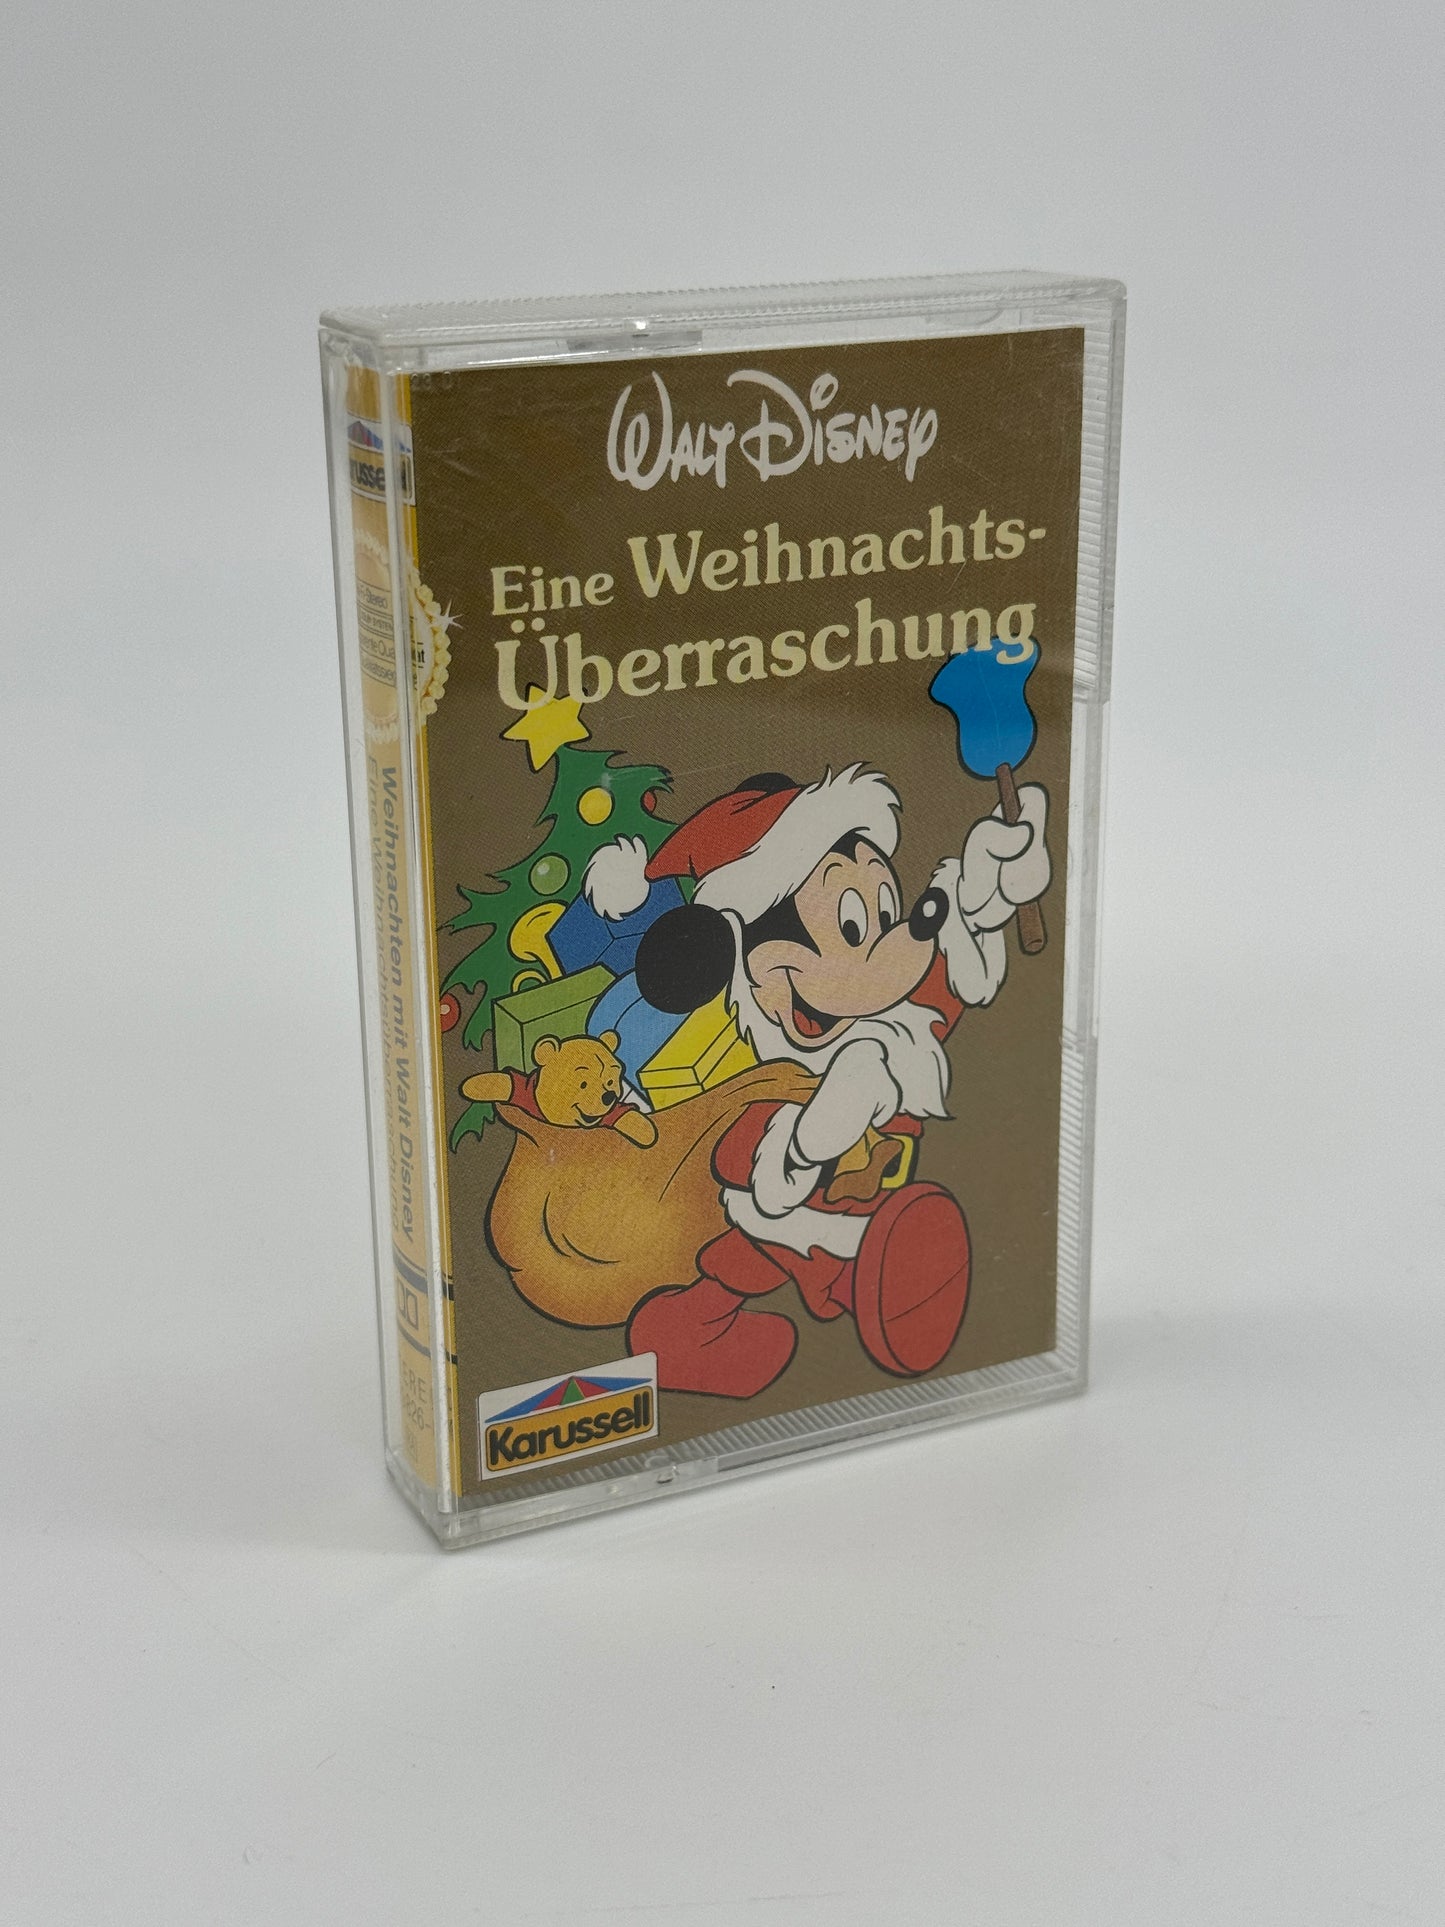 Walt Disney "Eine Weihnachtsüberraschung" Hörspielkassette (1986)